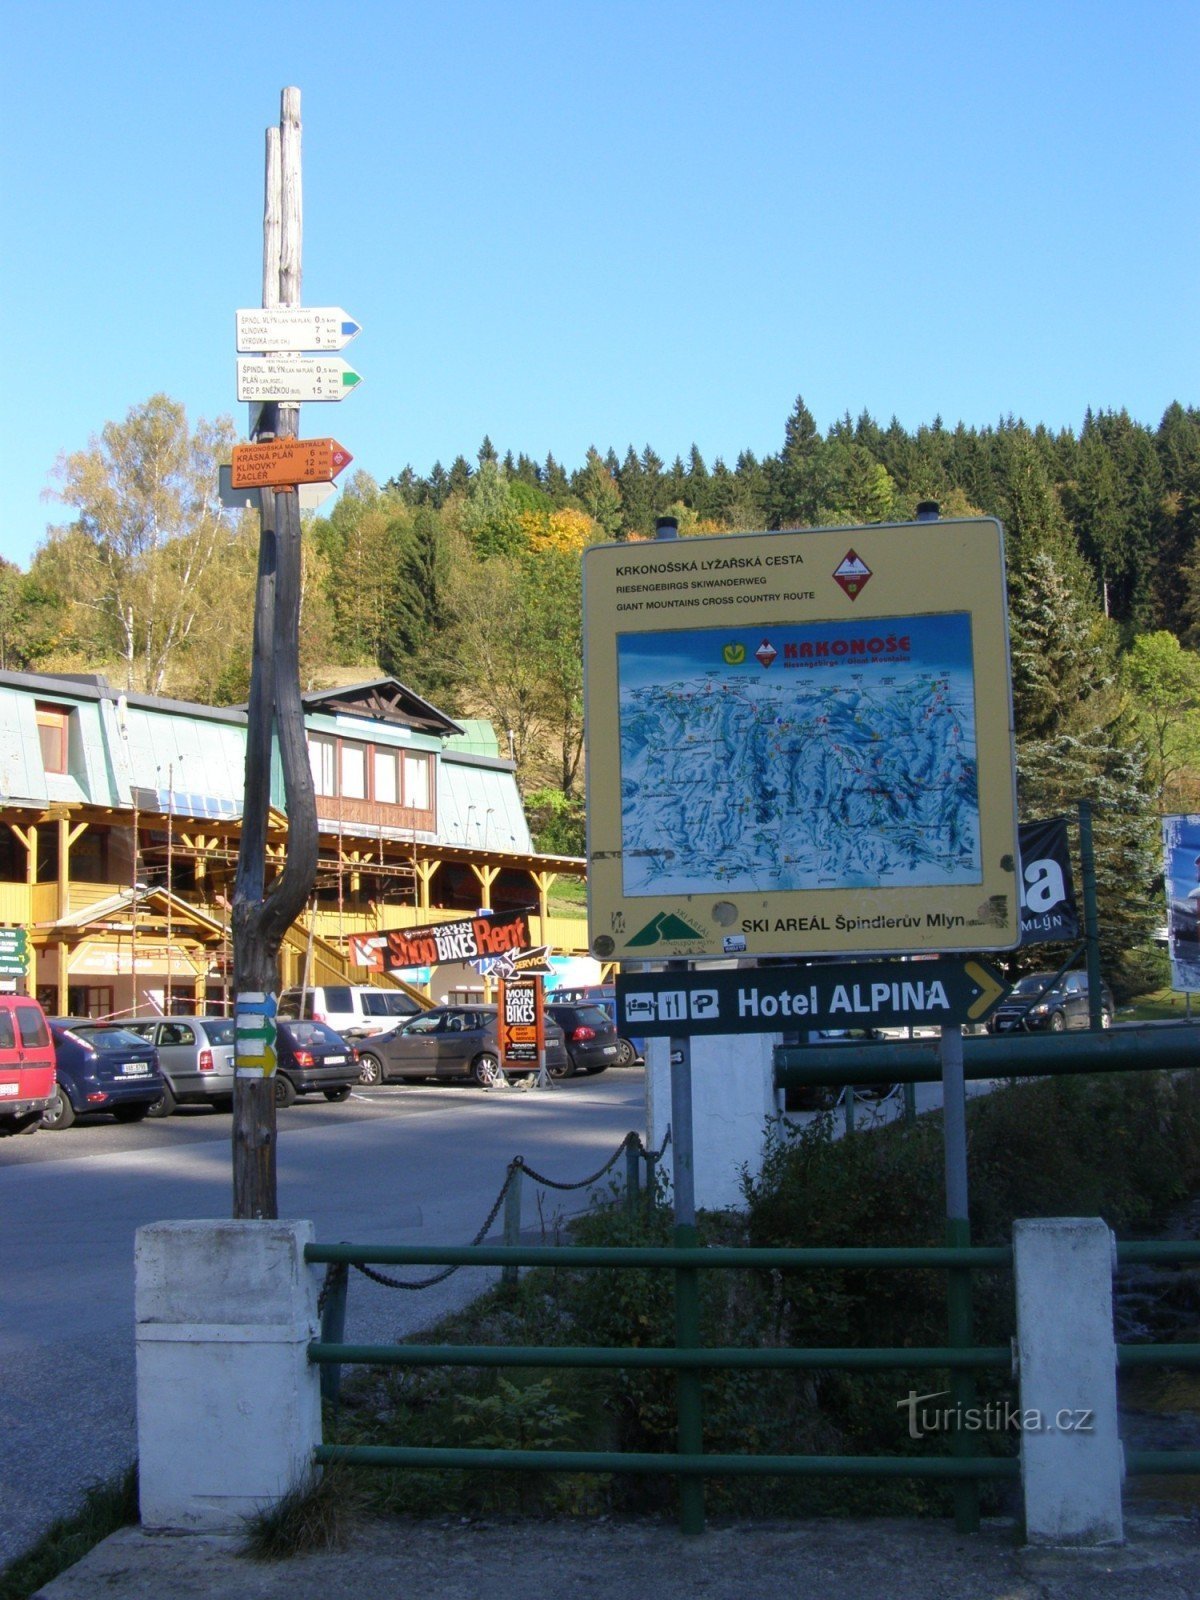 Răscruce turistică Špindlerův Mlýn - la centrul de informații